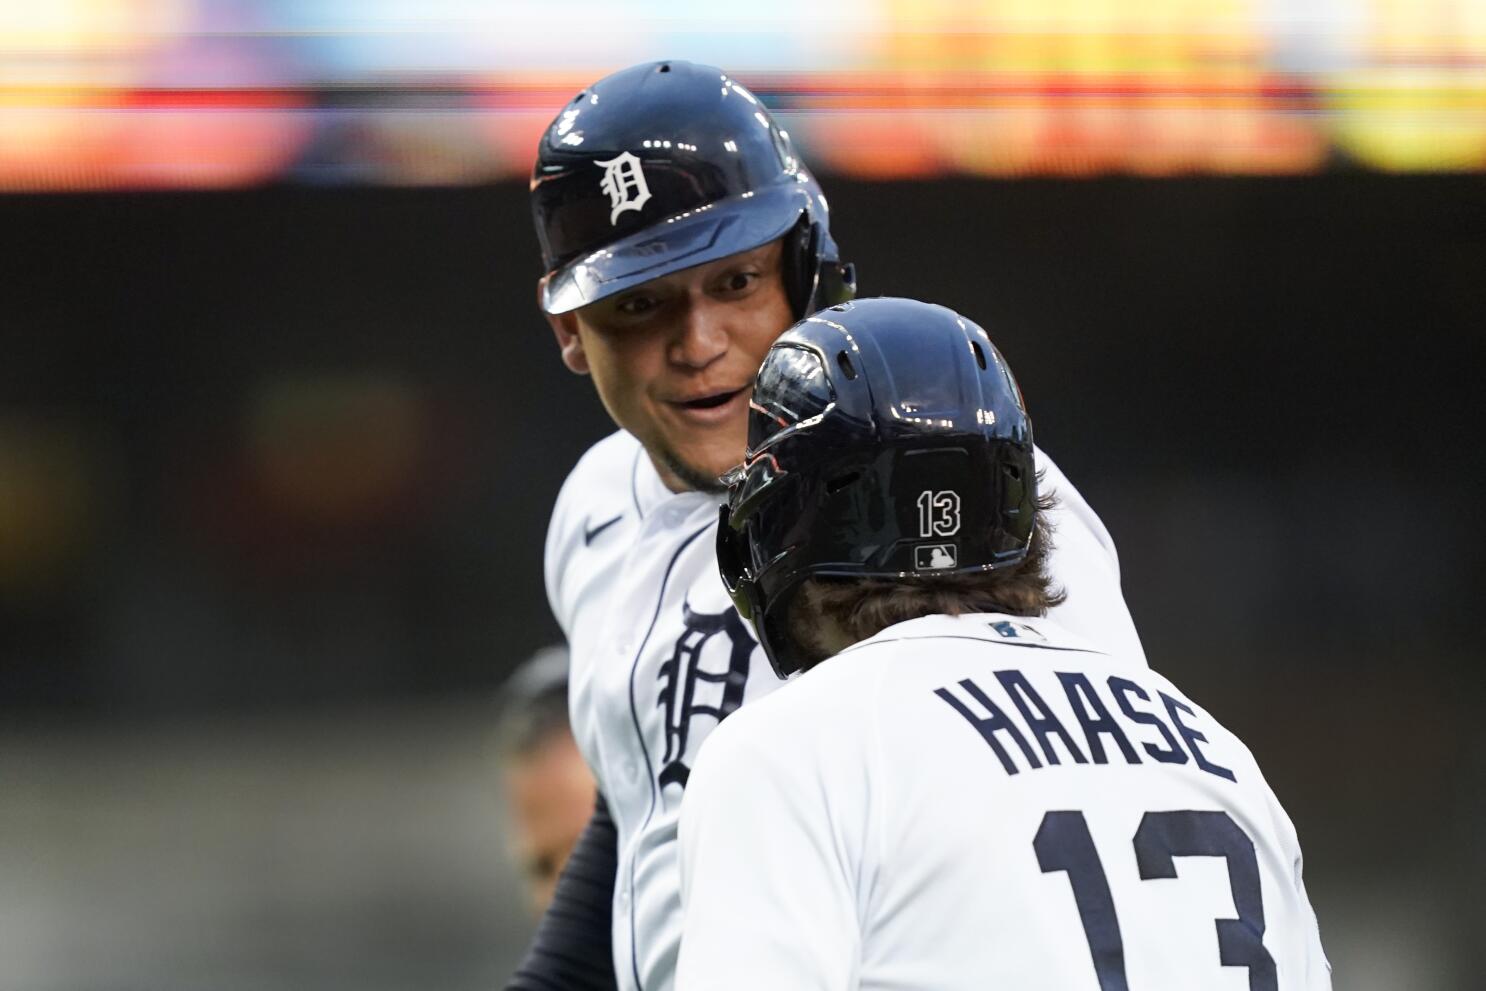 Short hits pinch-hit, three-run homer, Tigers beat Royals